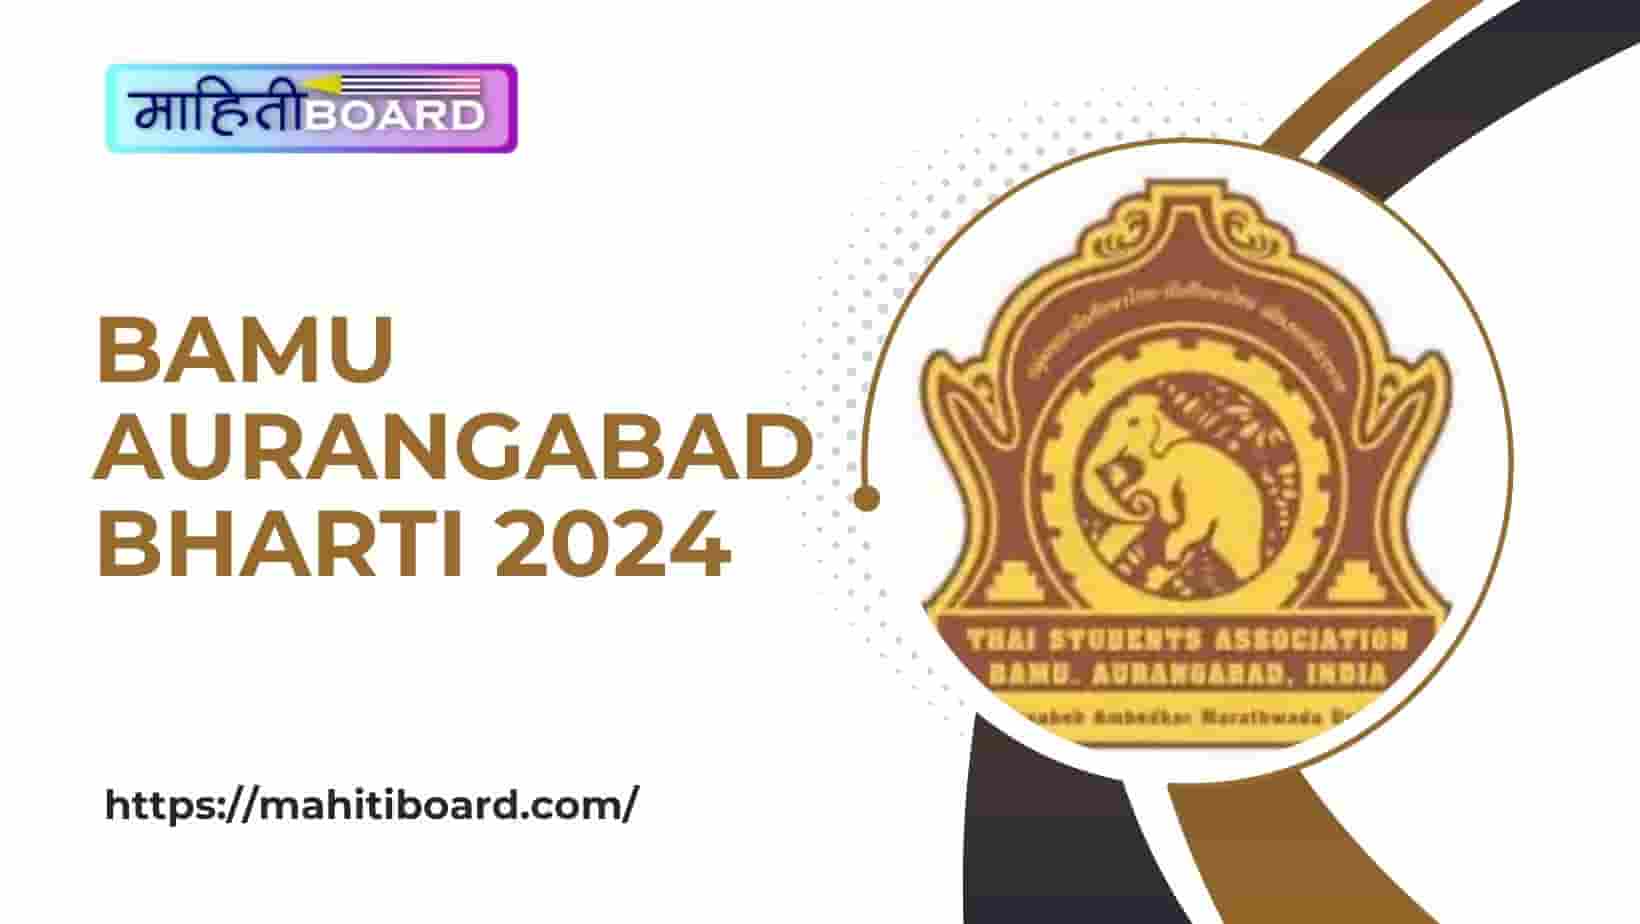 BAMU Aurangabad Bharti 2024